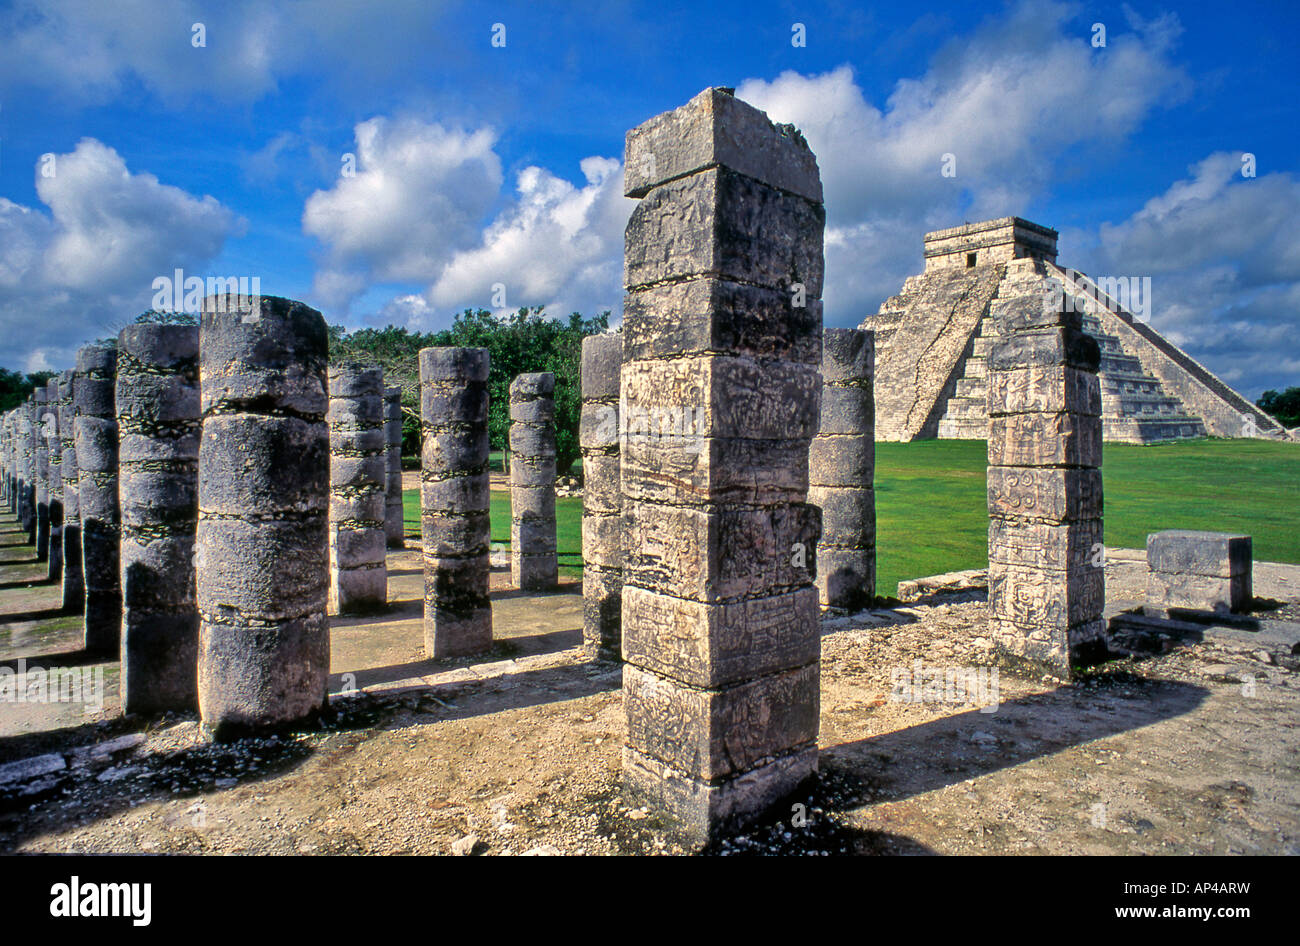 El Castillo Pyramide des Kukulcan Chichen Itza Yucatan Mexiko Stockfoto